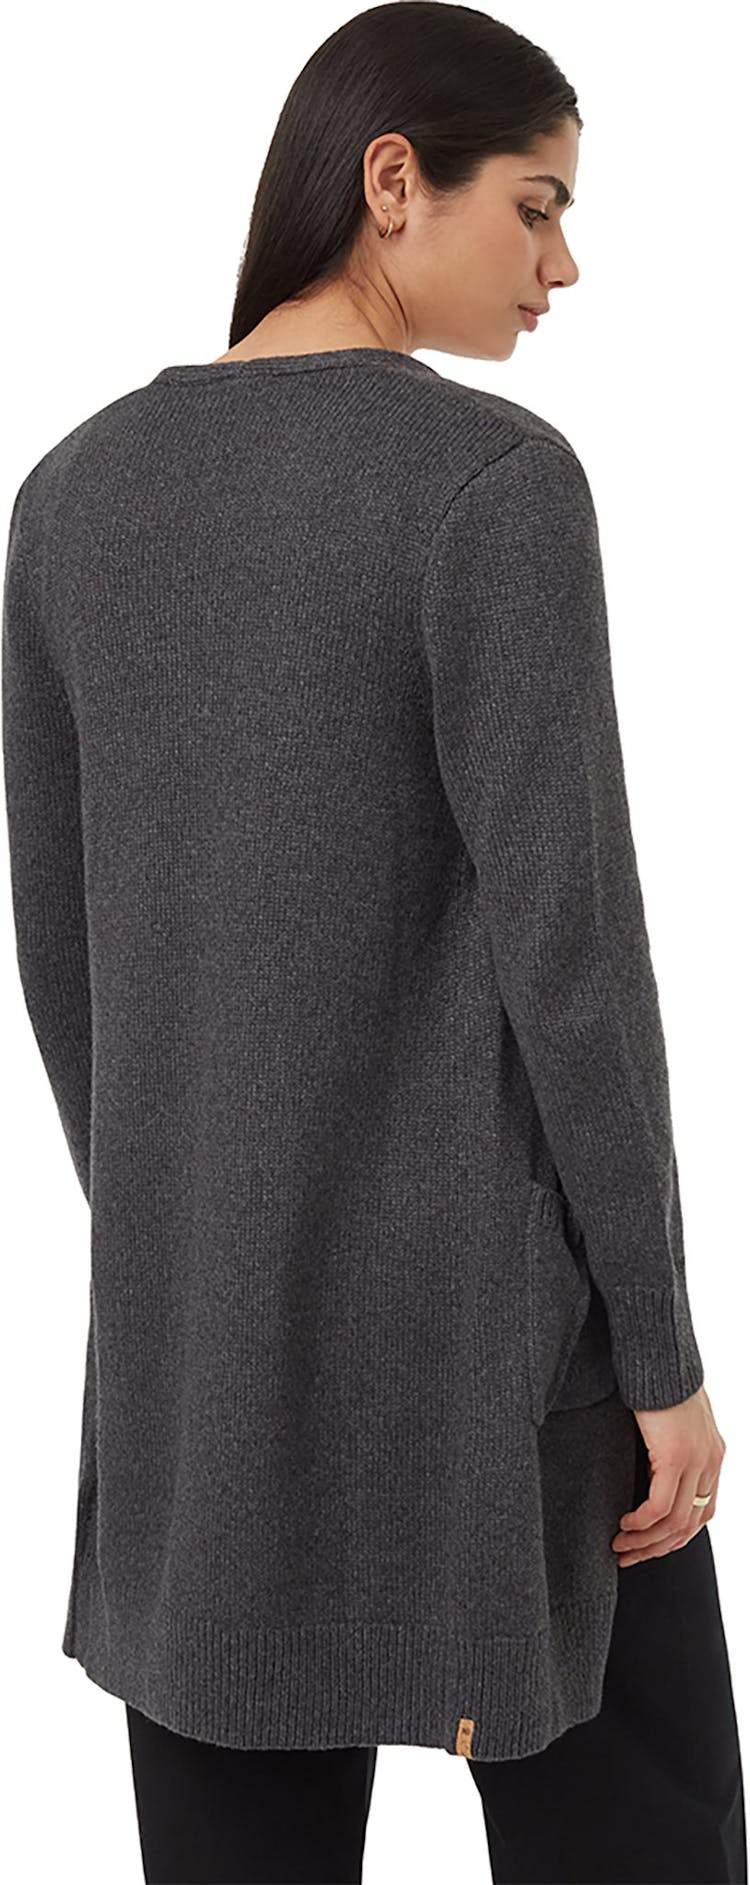 Numéro de l'image de la galerie de produits 2 pour le produit Cardigan en laine Highline - Femme